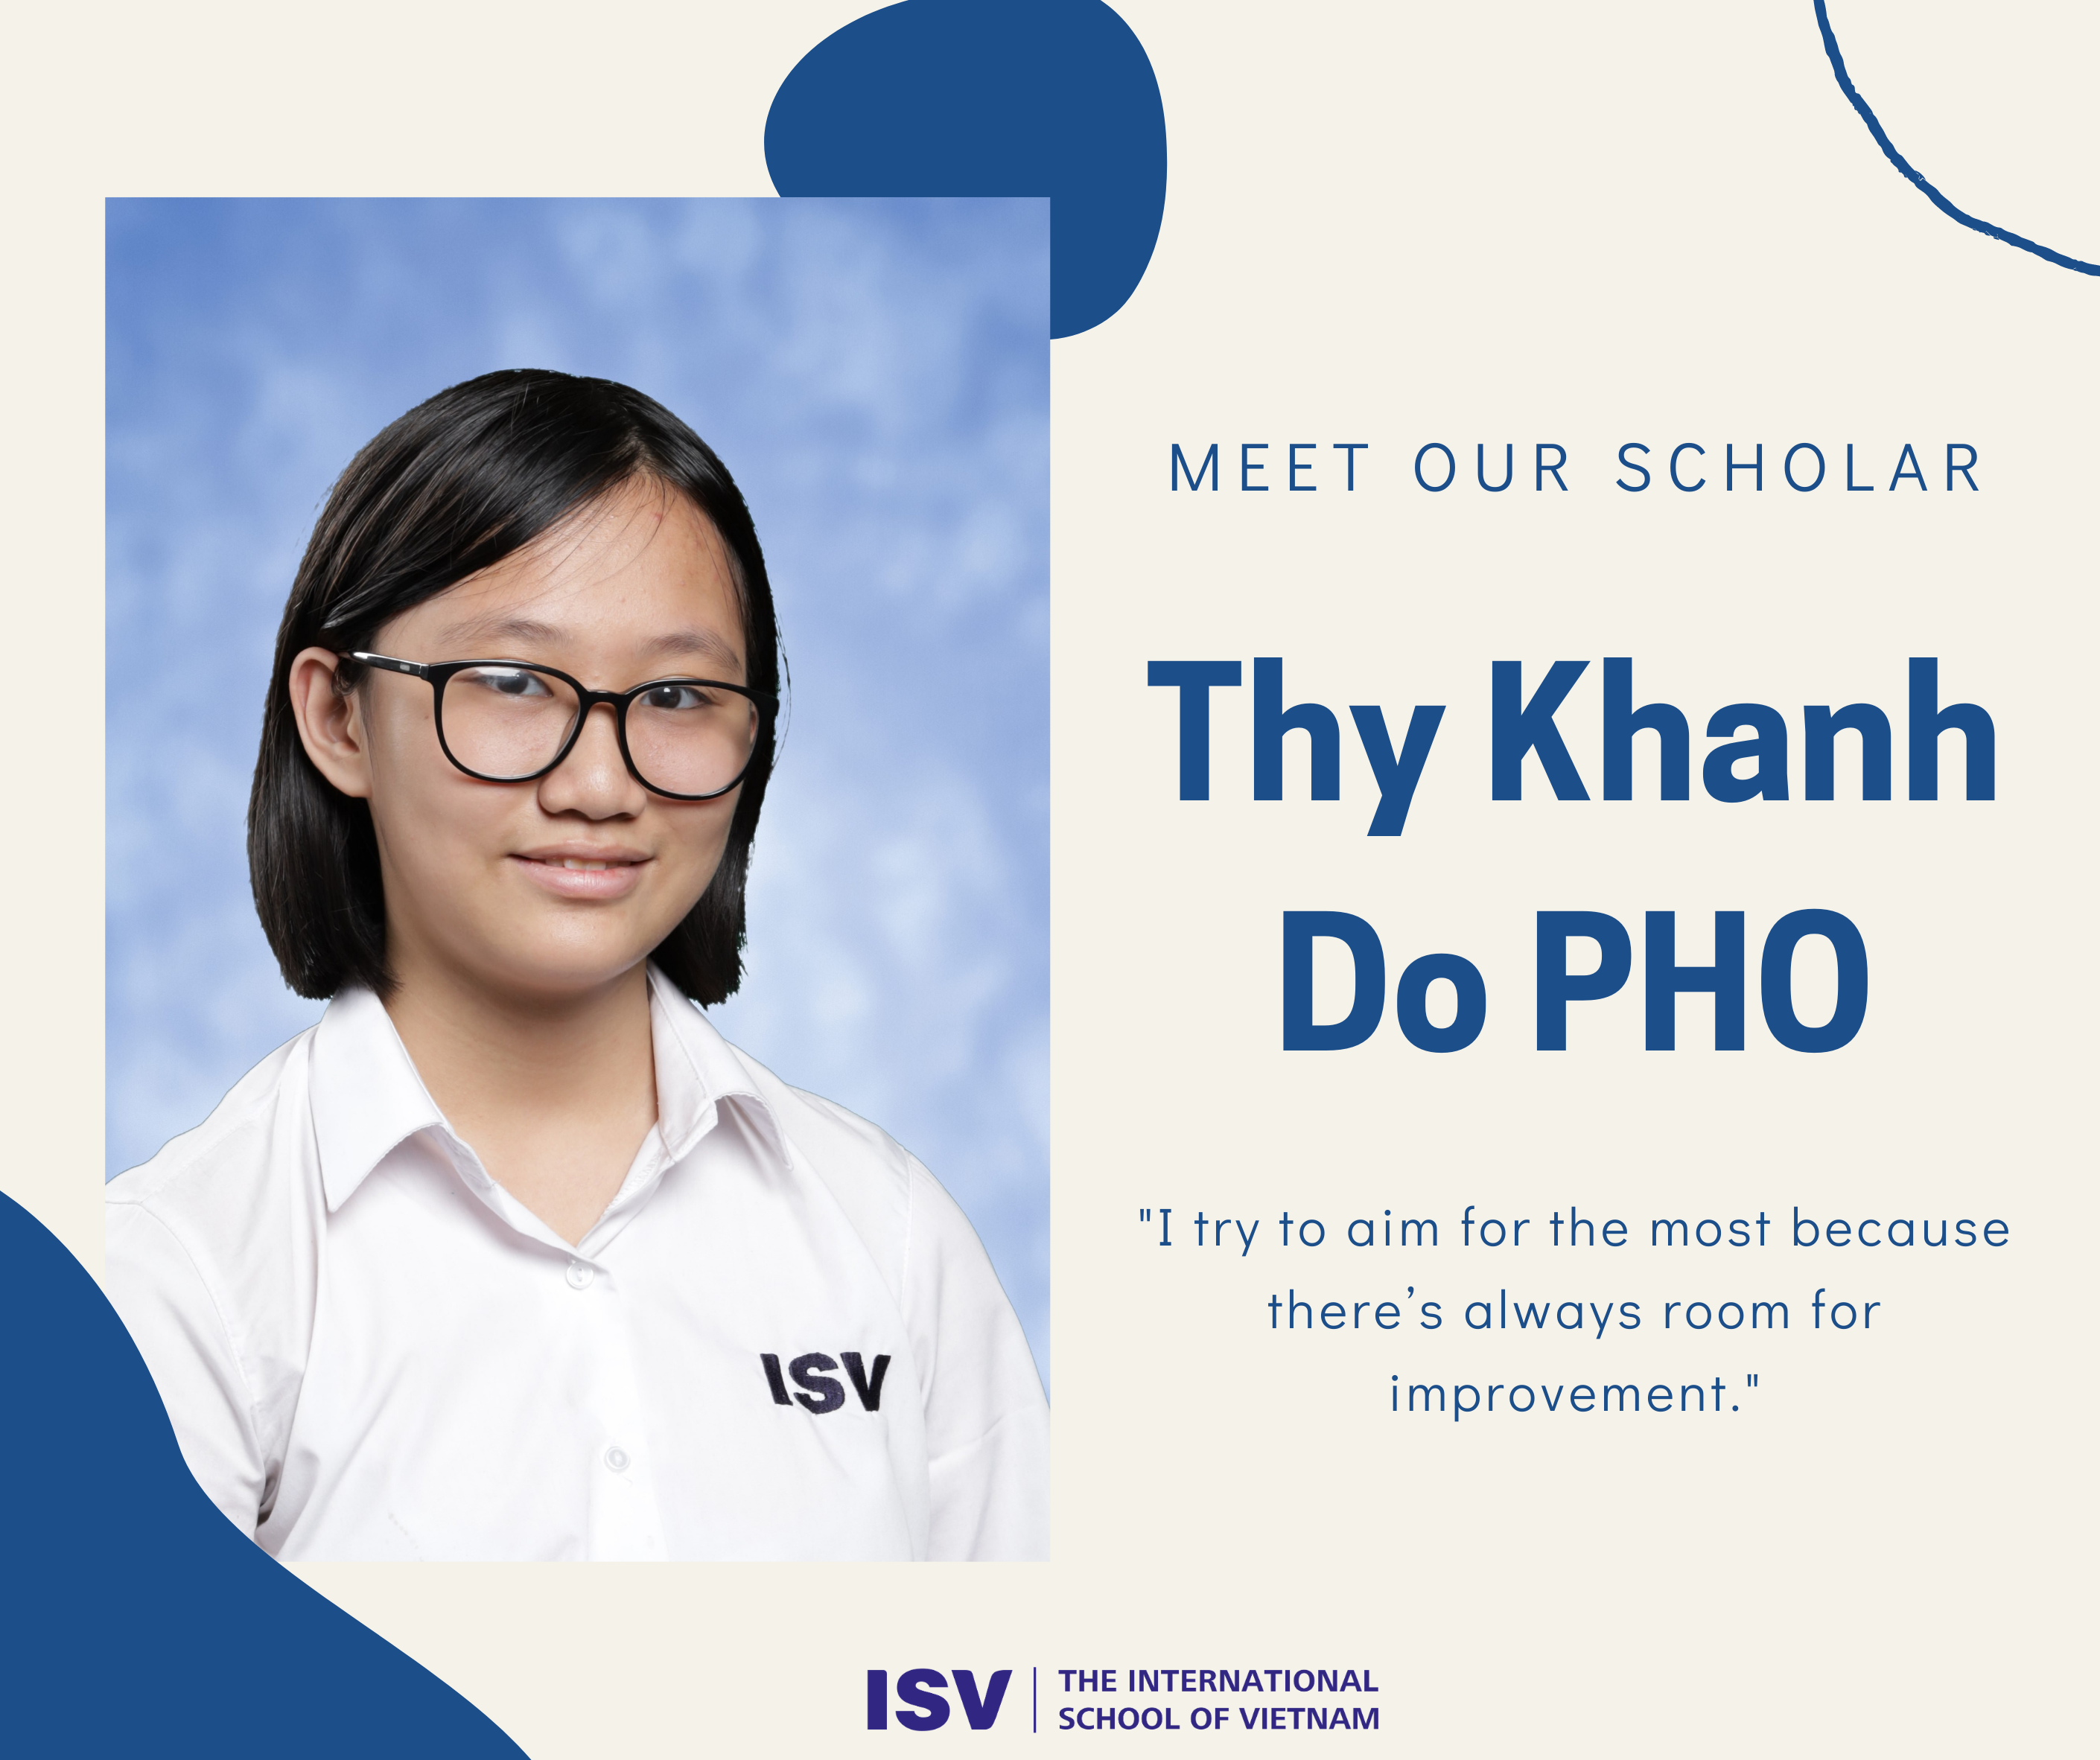 Meet Our Scholar - Thy Khanh Do PHO